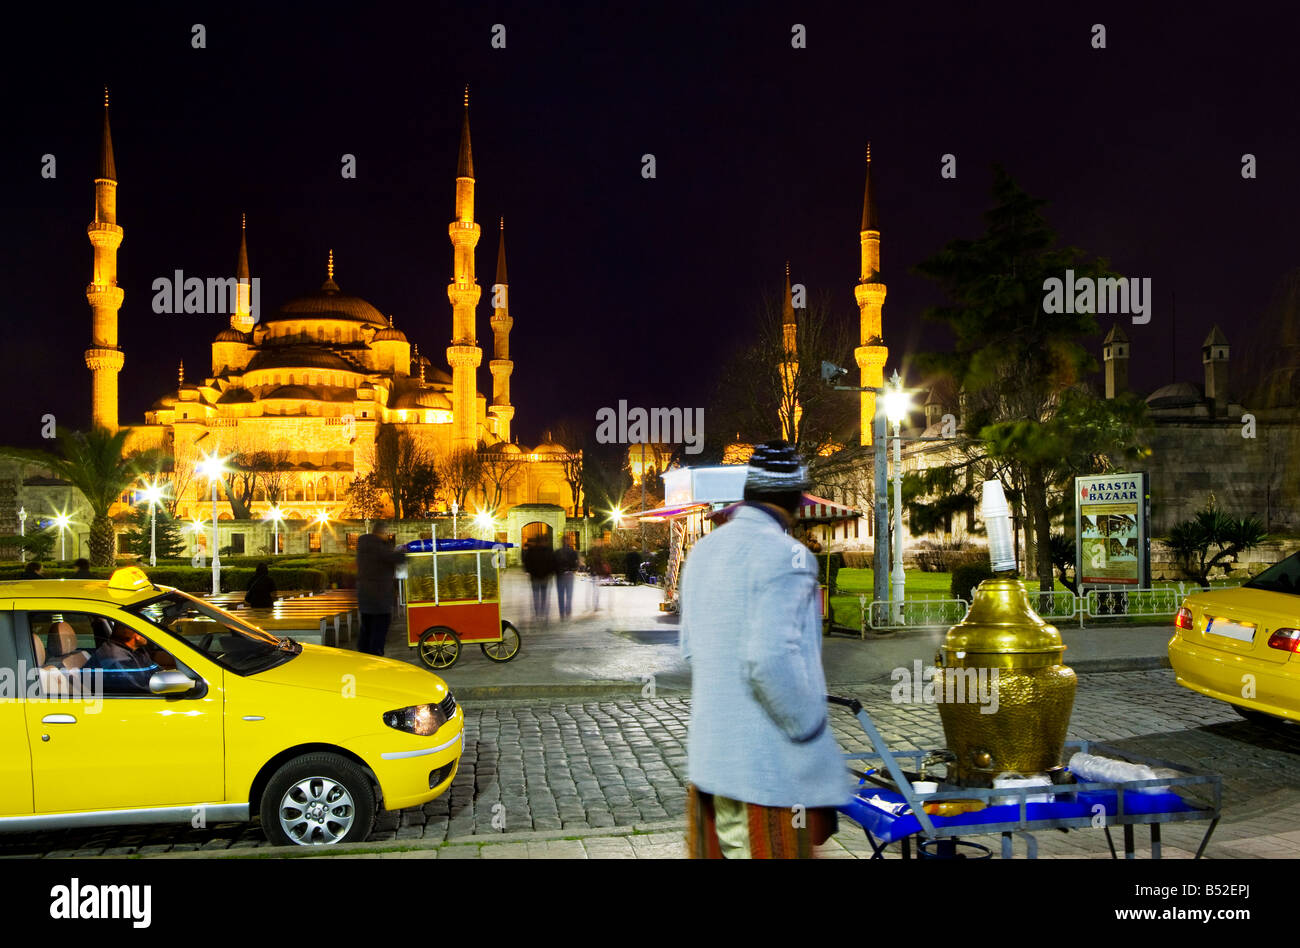 Taxifahrer warten zusammen mit Simit türkische Bagels und Tee Anbieter vor der blauen Moschee. Türkei, Istanbul, Sultanahmet. Stockfoto